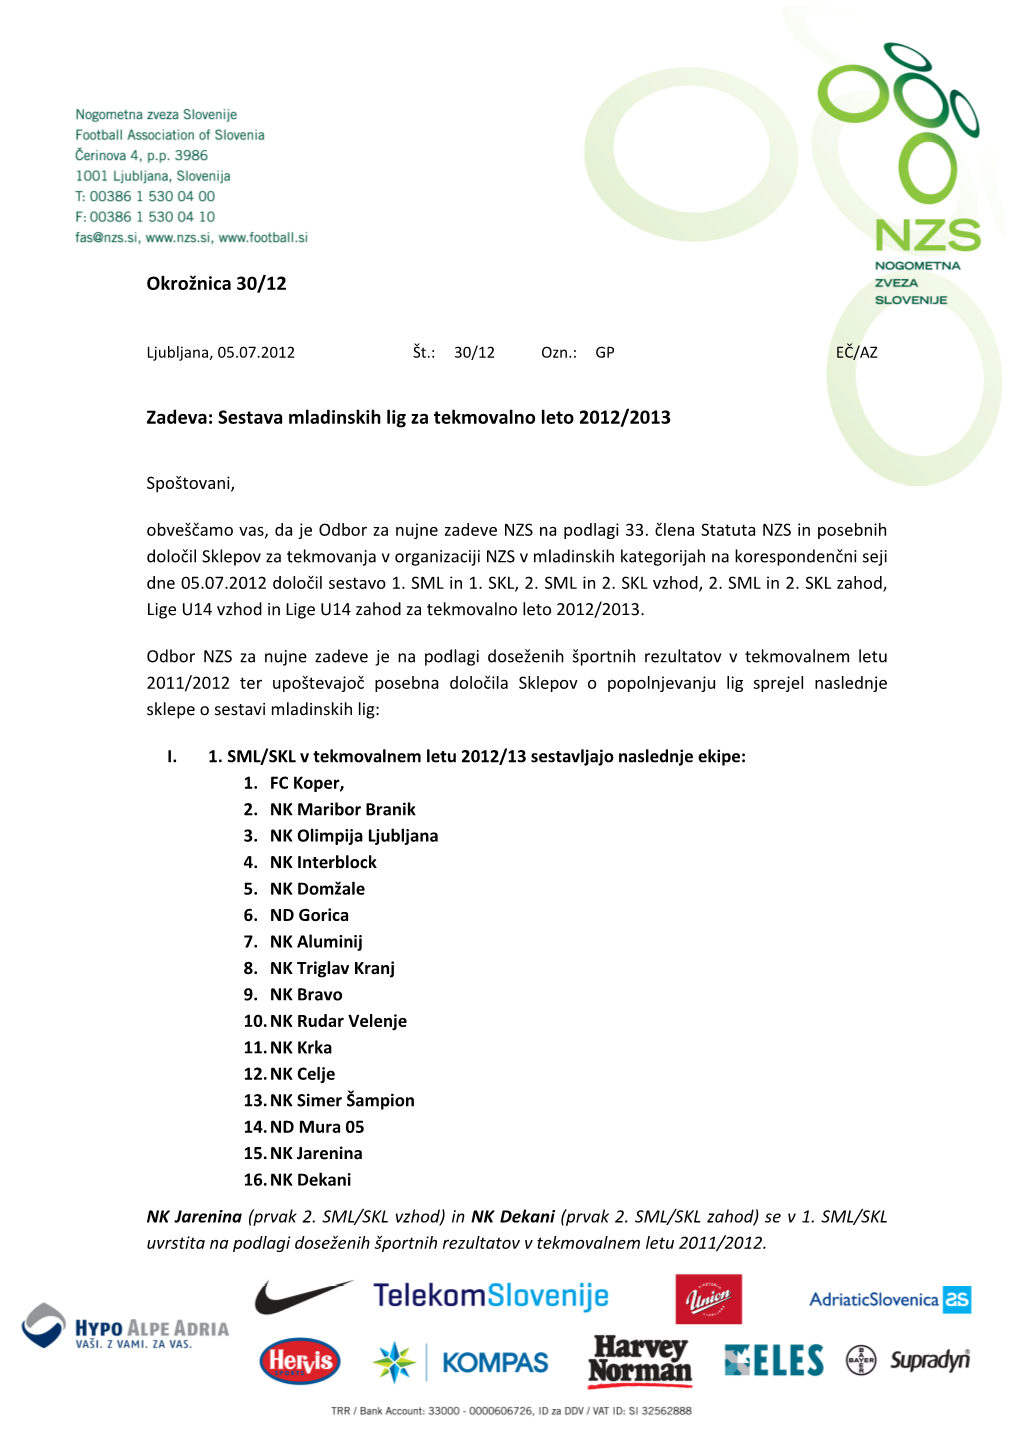 Zadeva: Sestava Mladinskih Lig Za Tekmovalno Leto 2012/2013